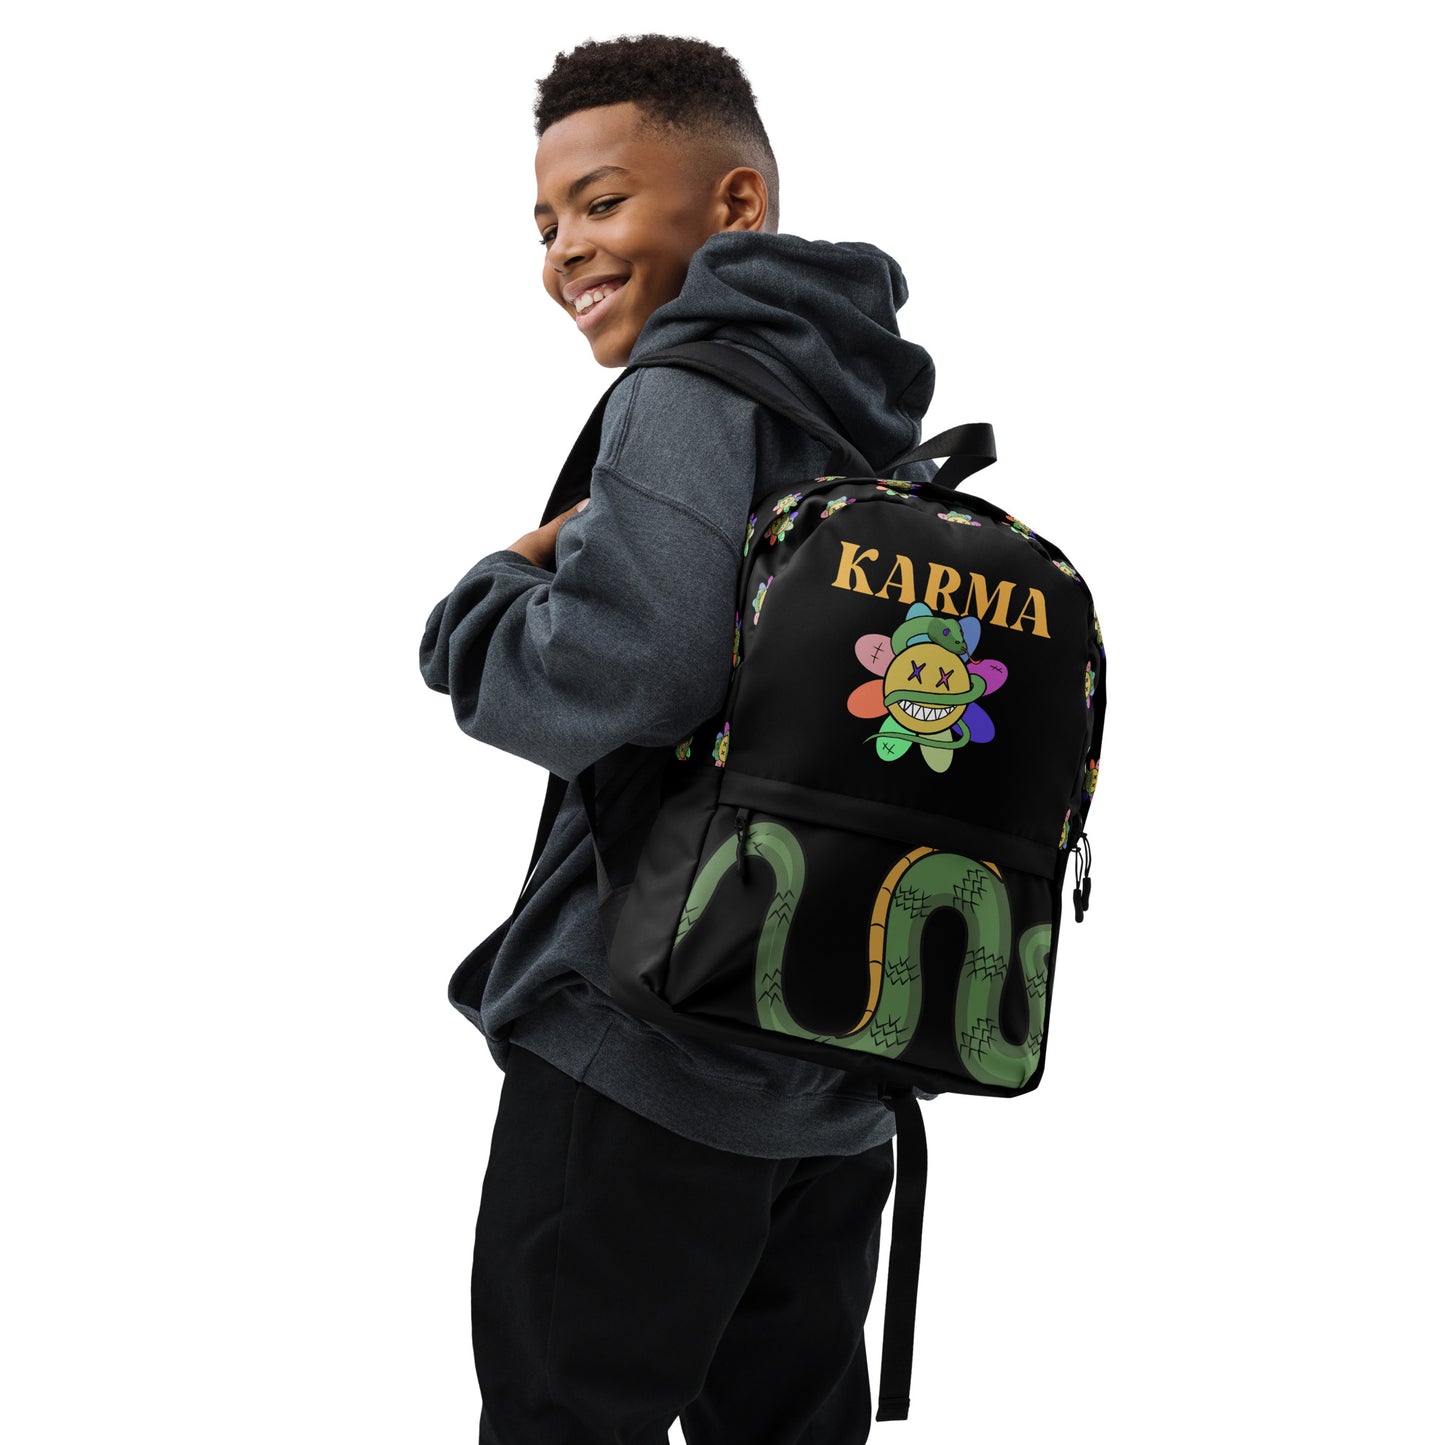 Karma - Backpack